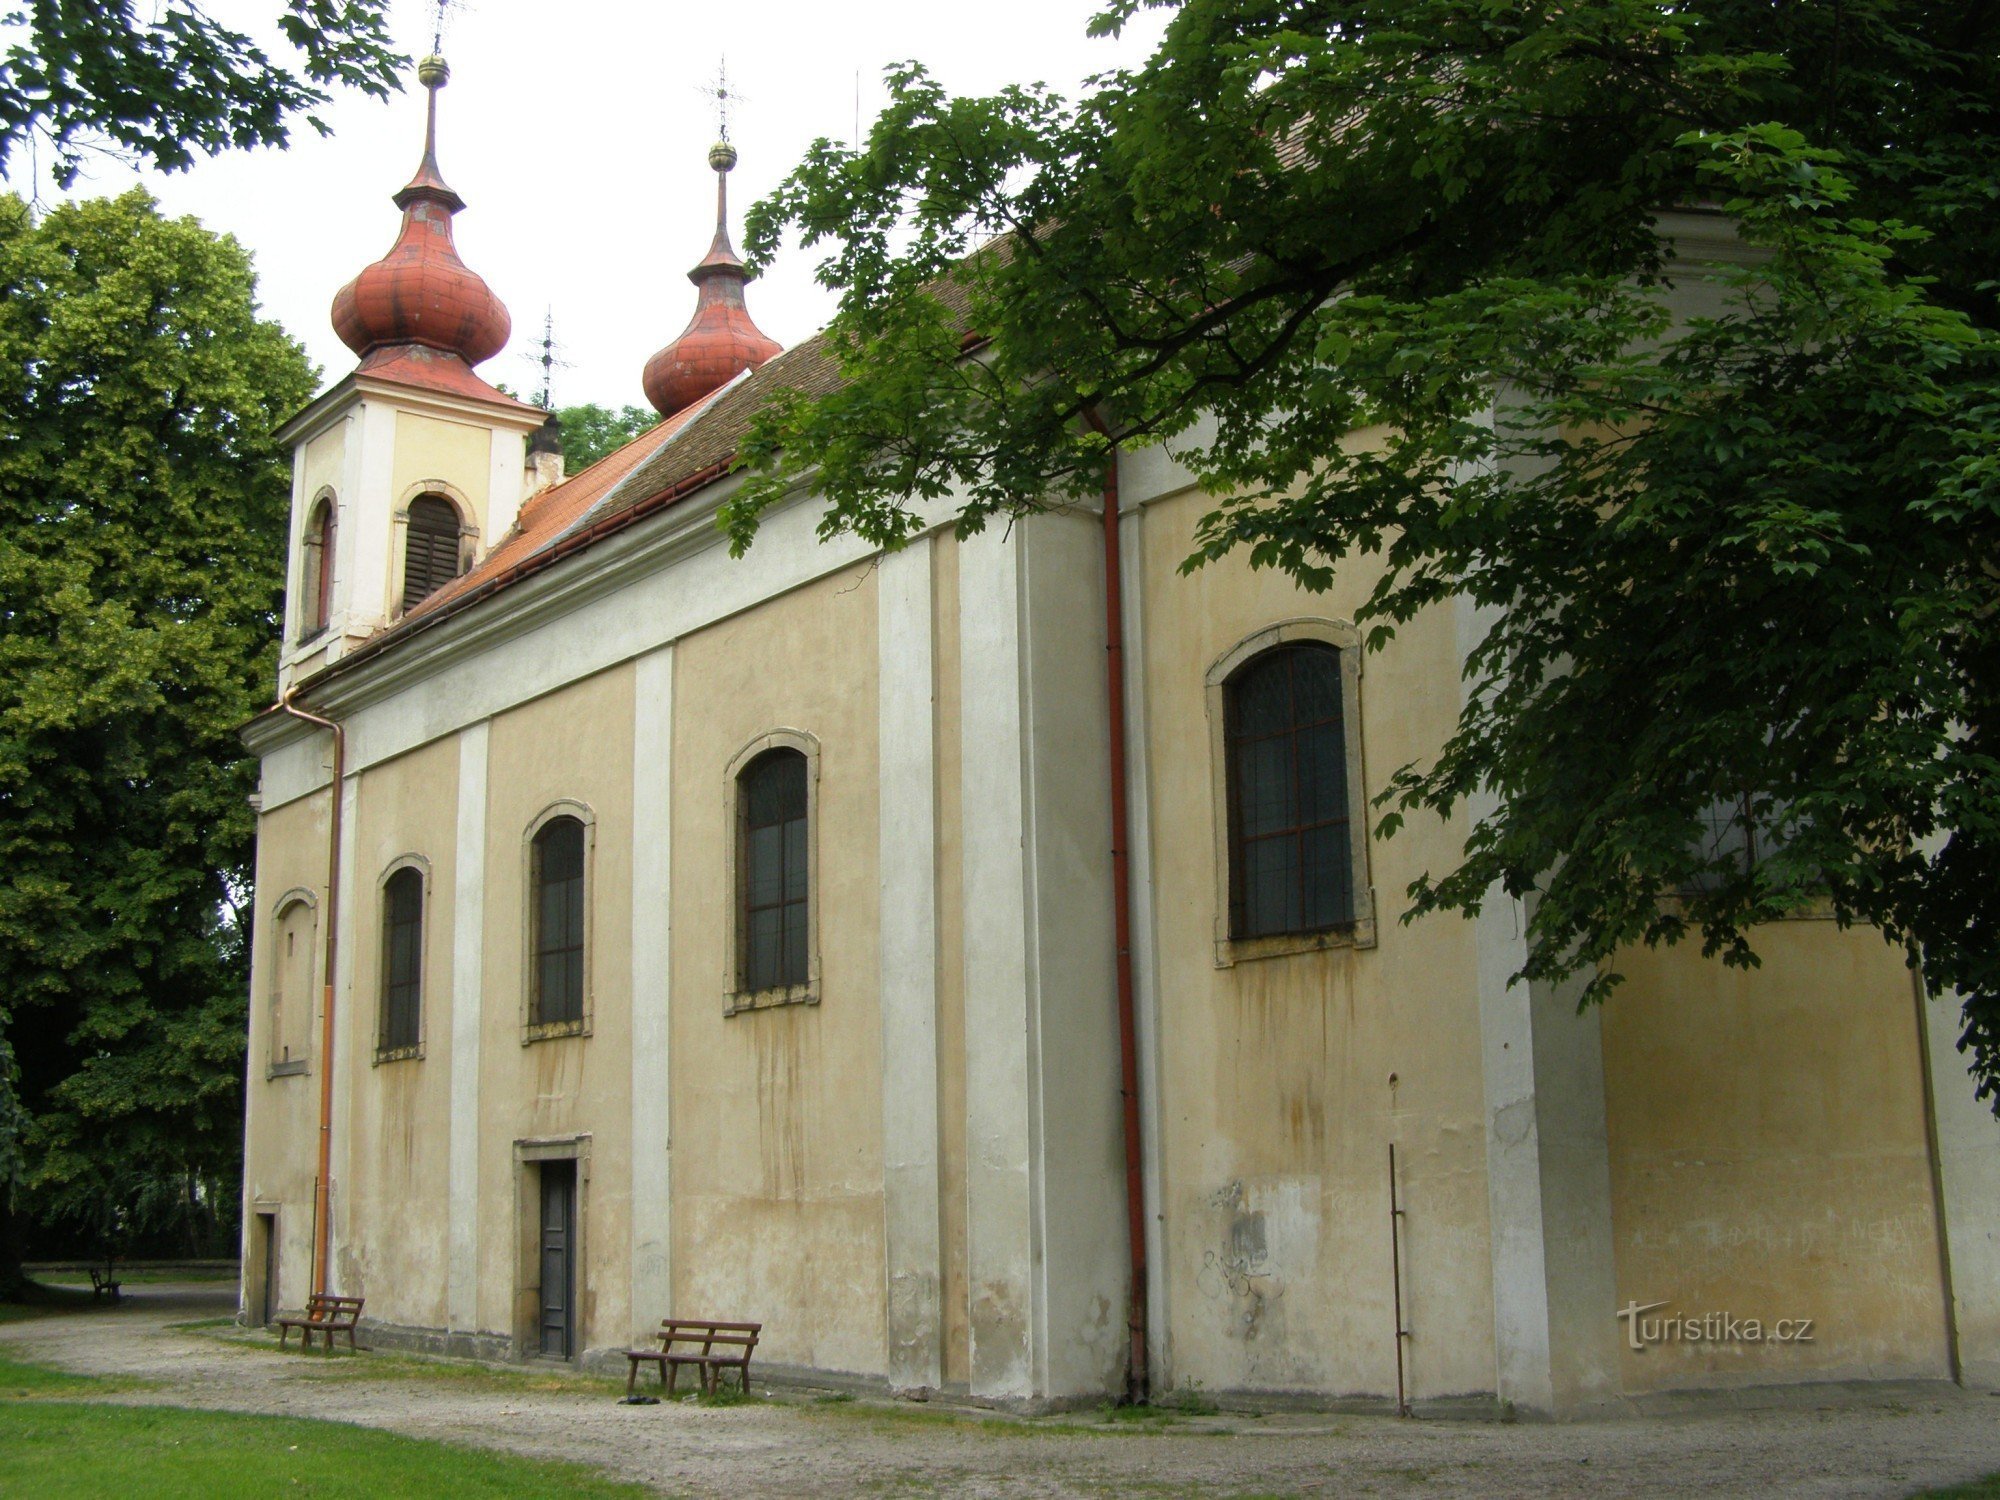 Nový Bydžov - Crkva Presvetog Trojstva